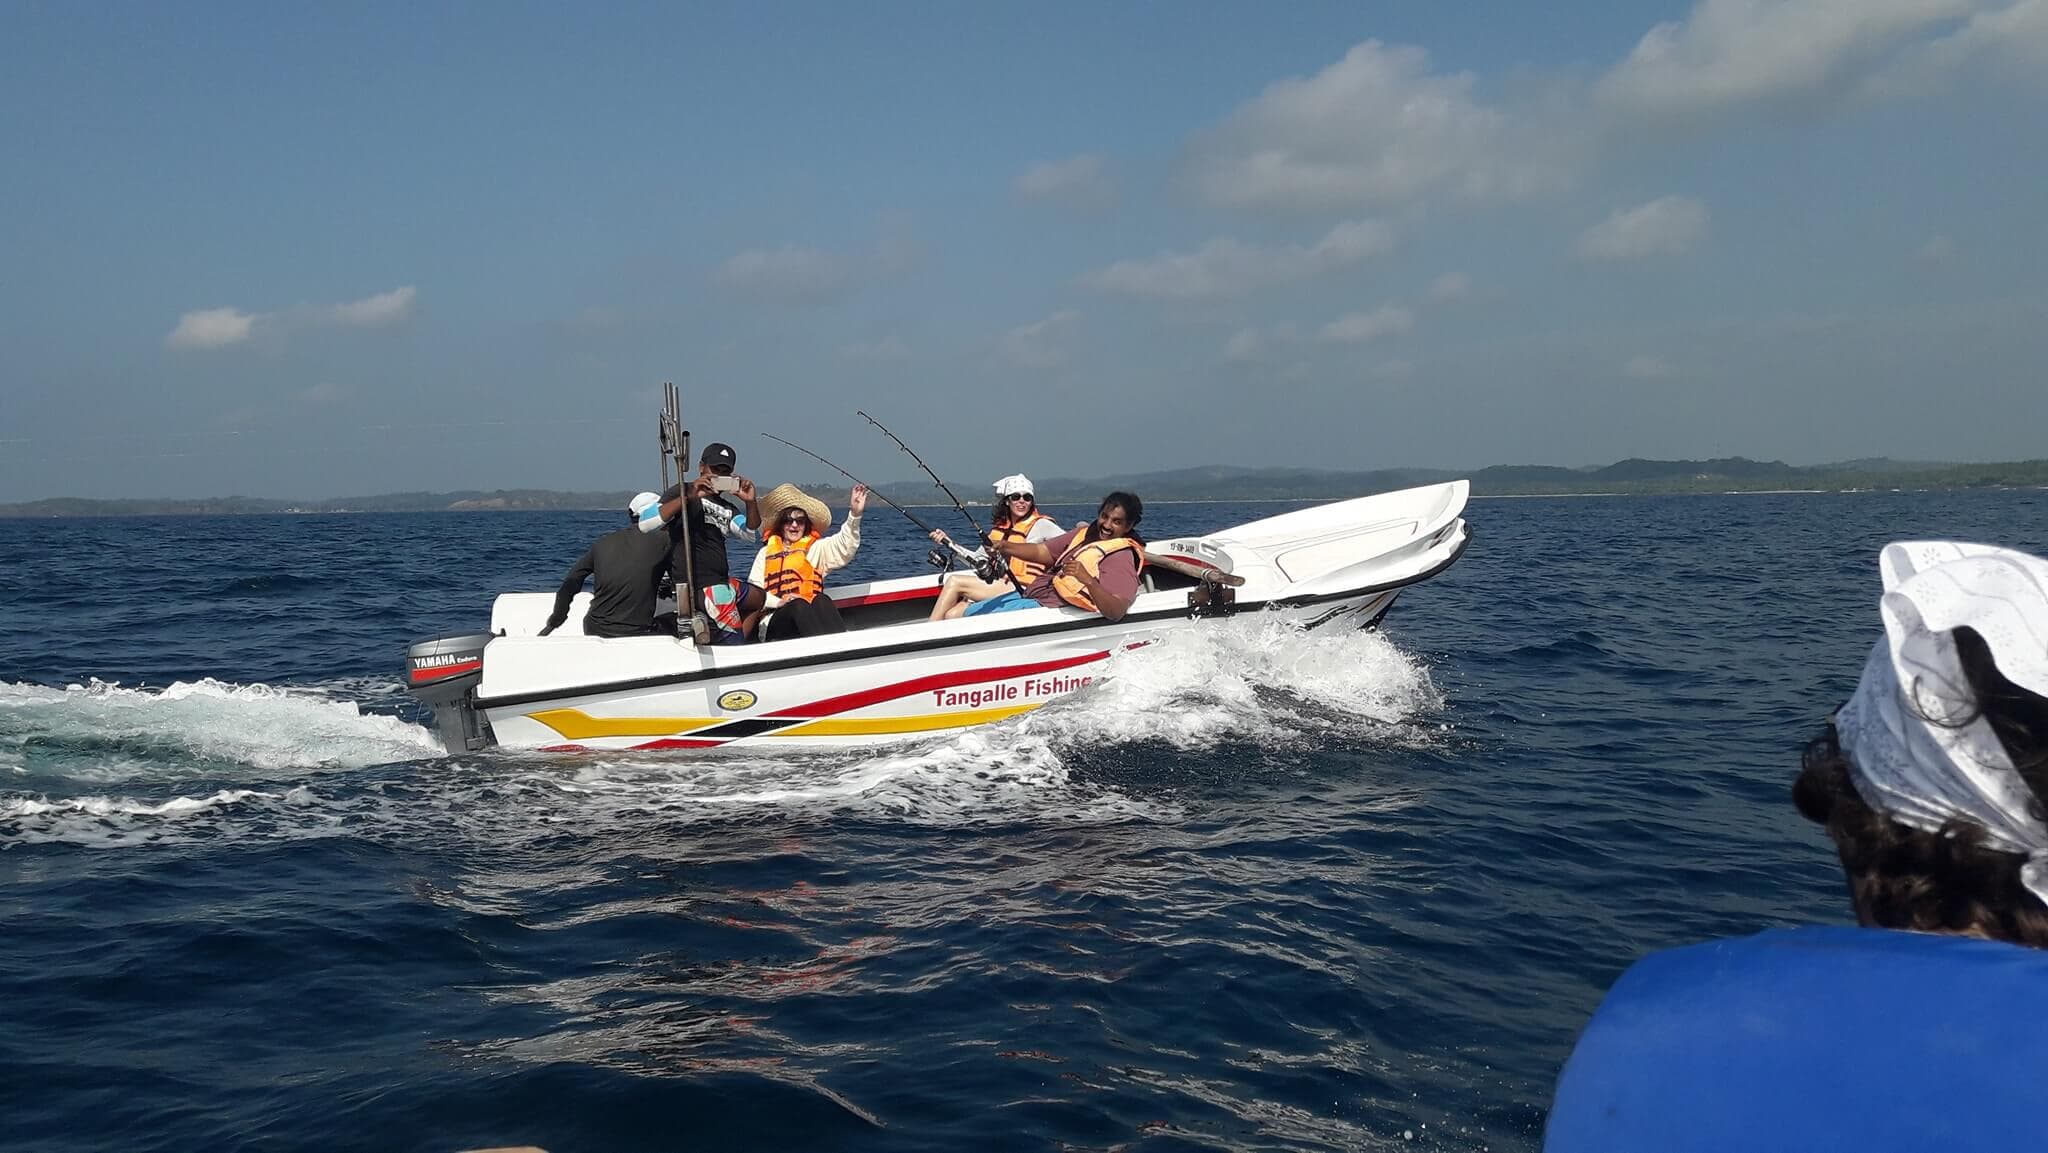 Touristen fahren mit einem Fischerboot, um Fische im Tangalle-Meer zu fangen